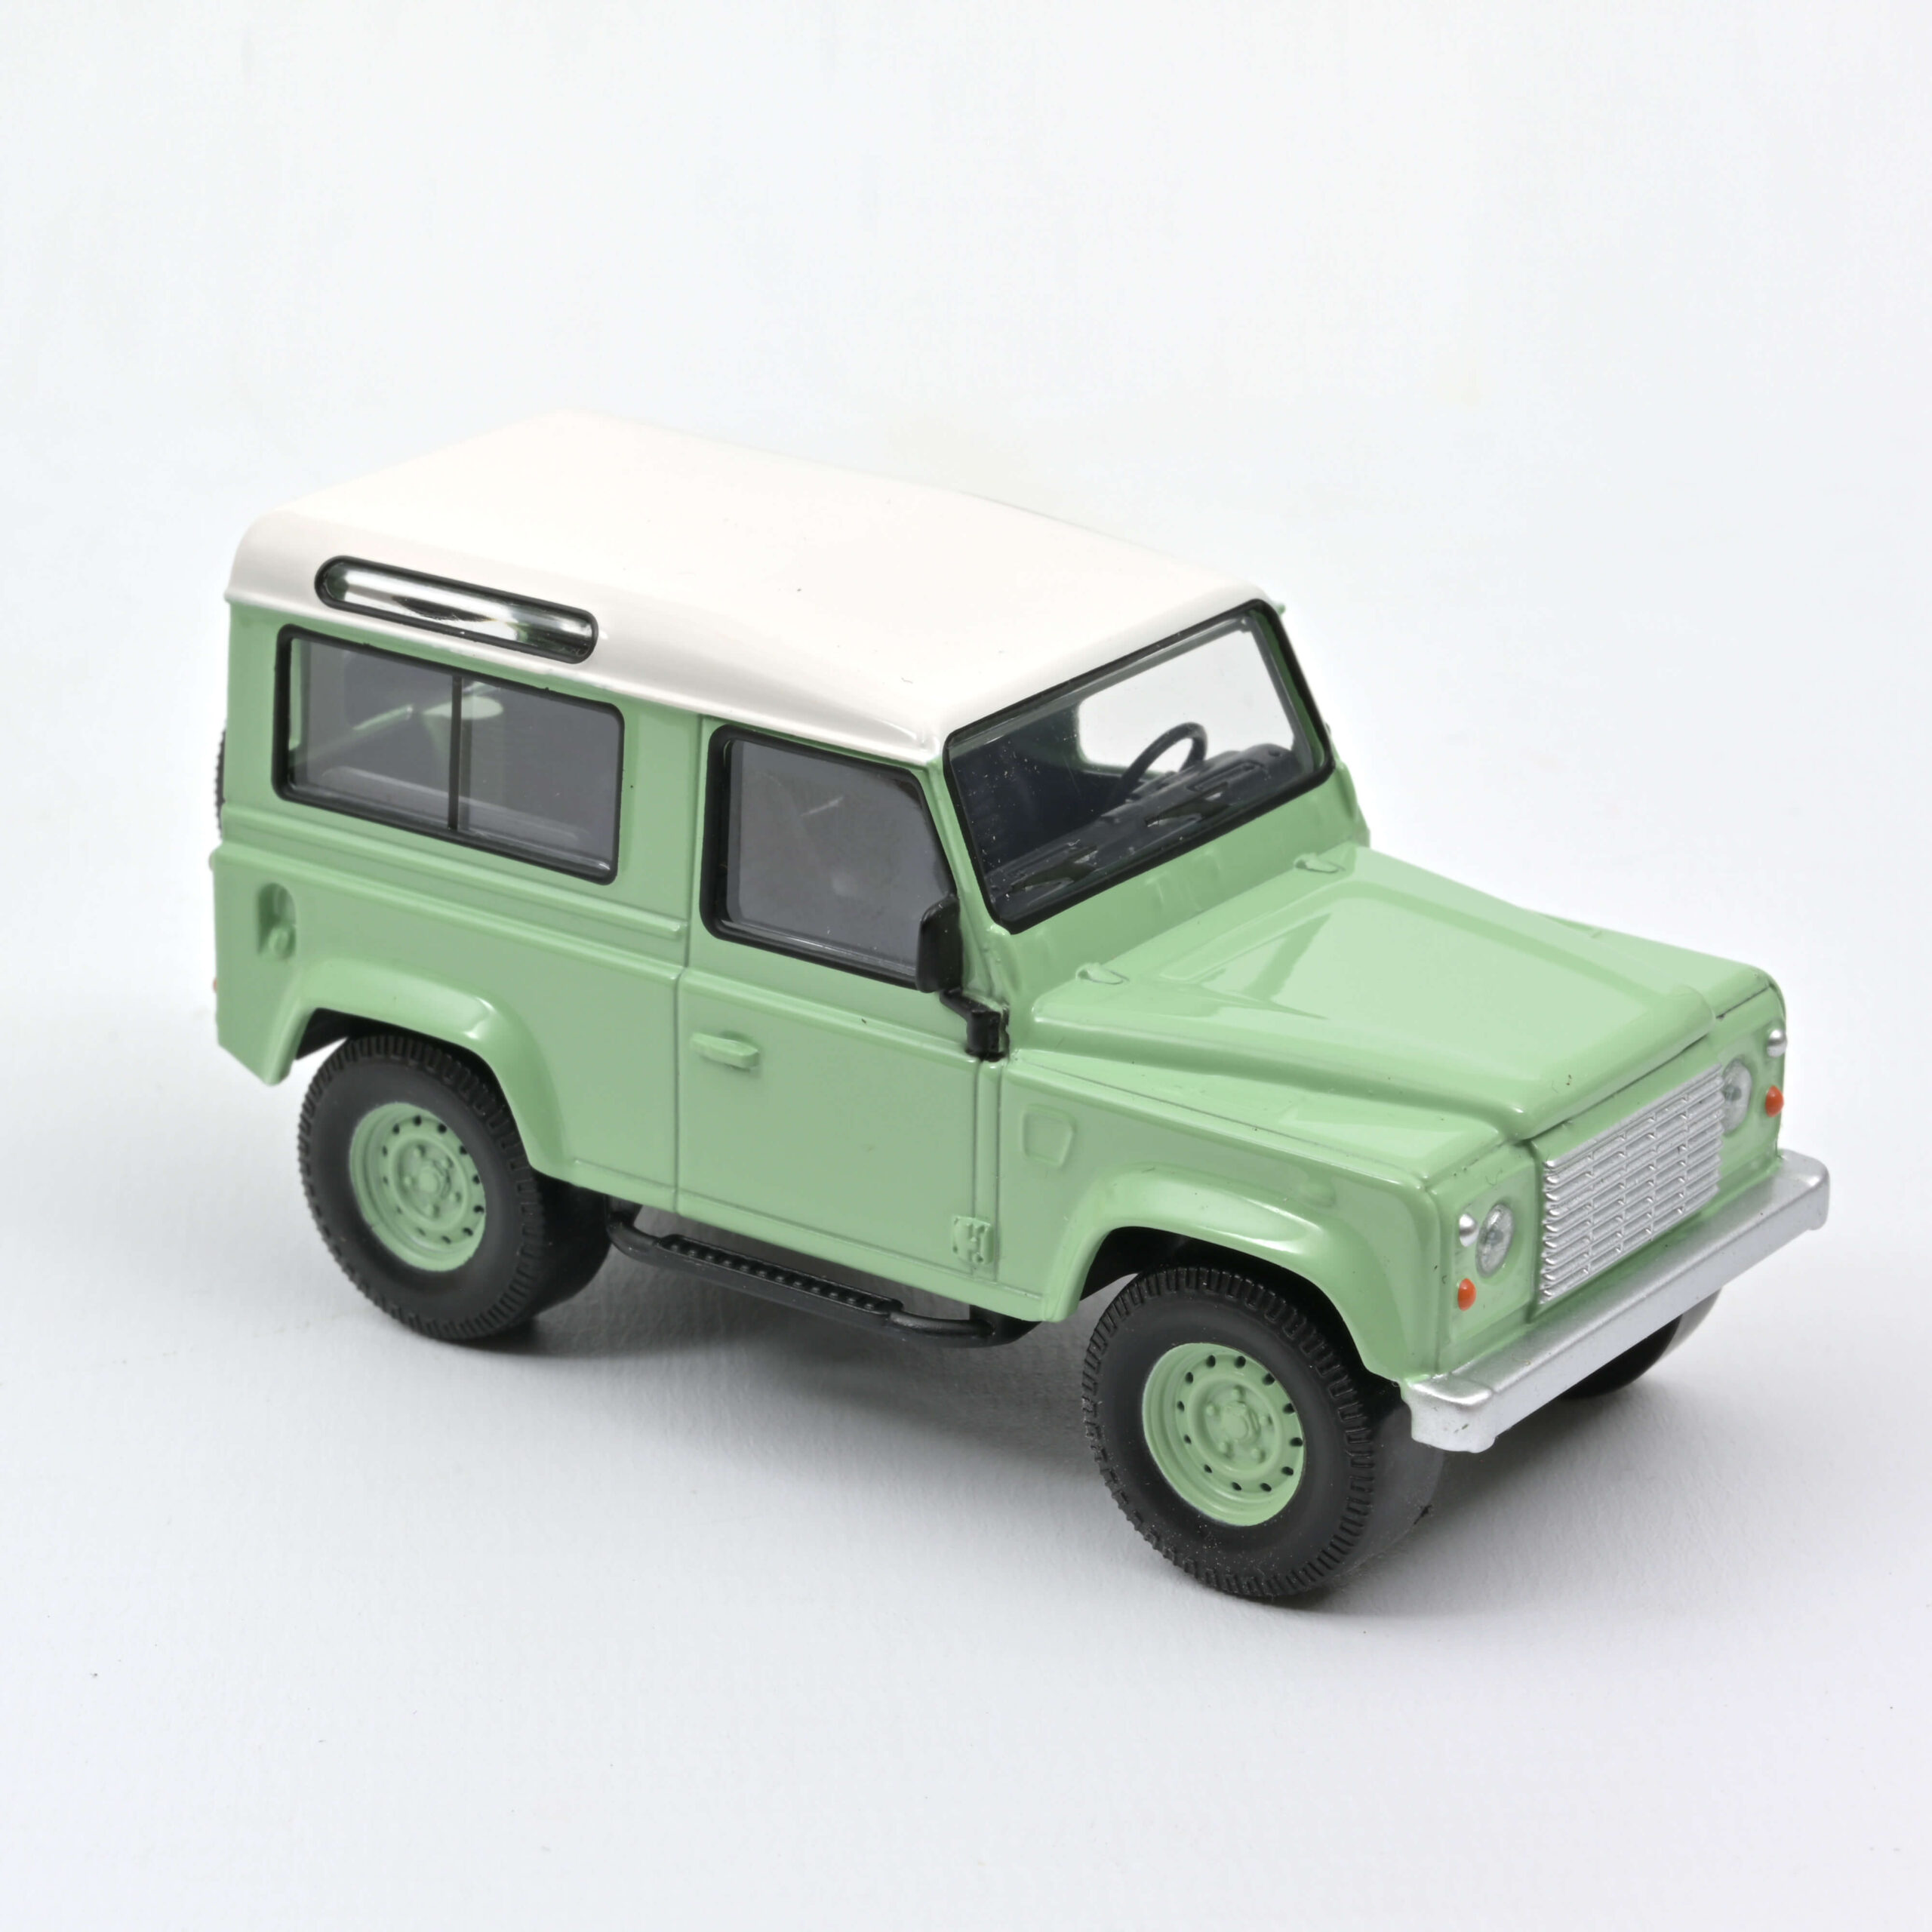 Land Rover Defender 1995 – Green & White